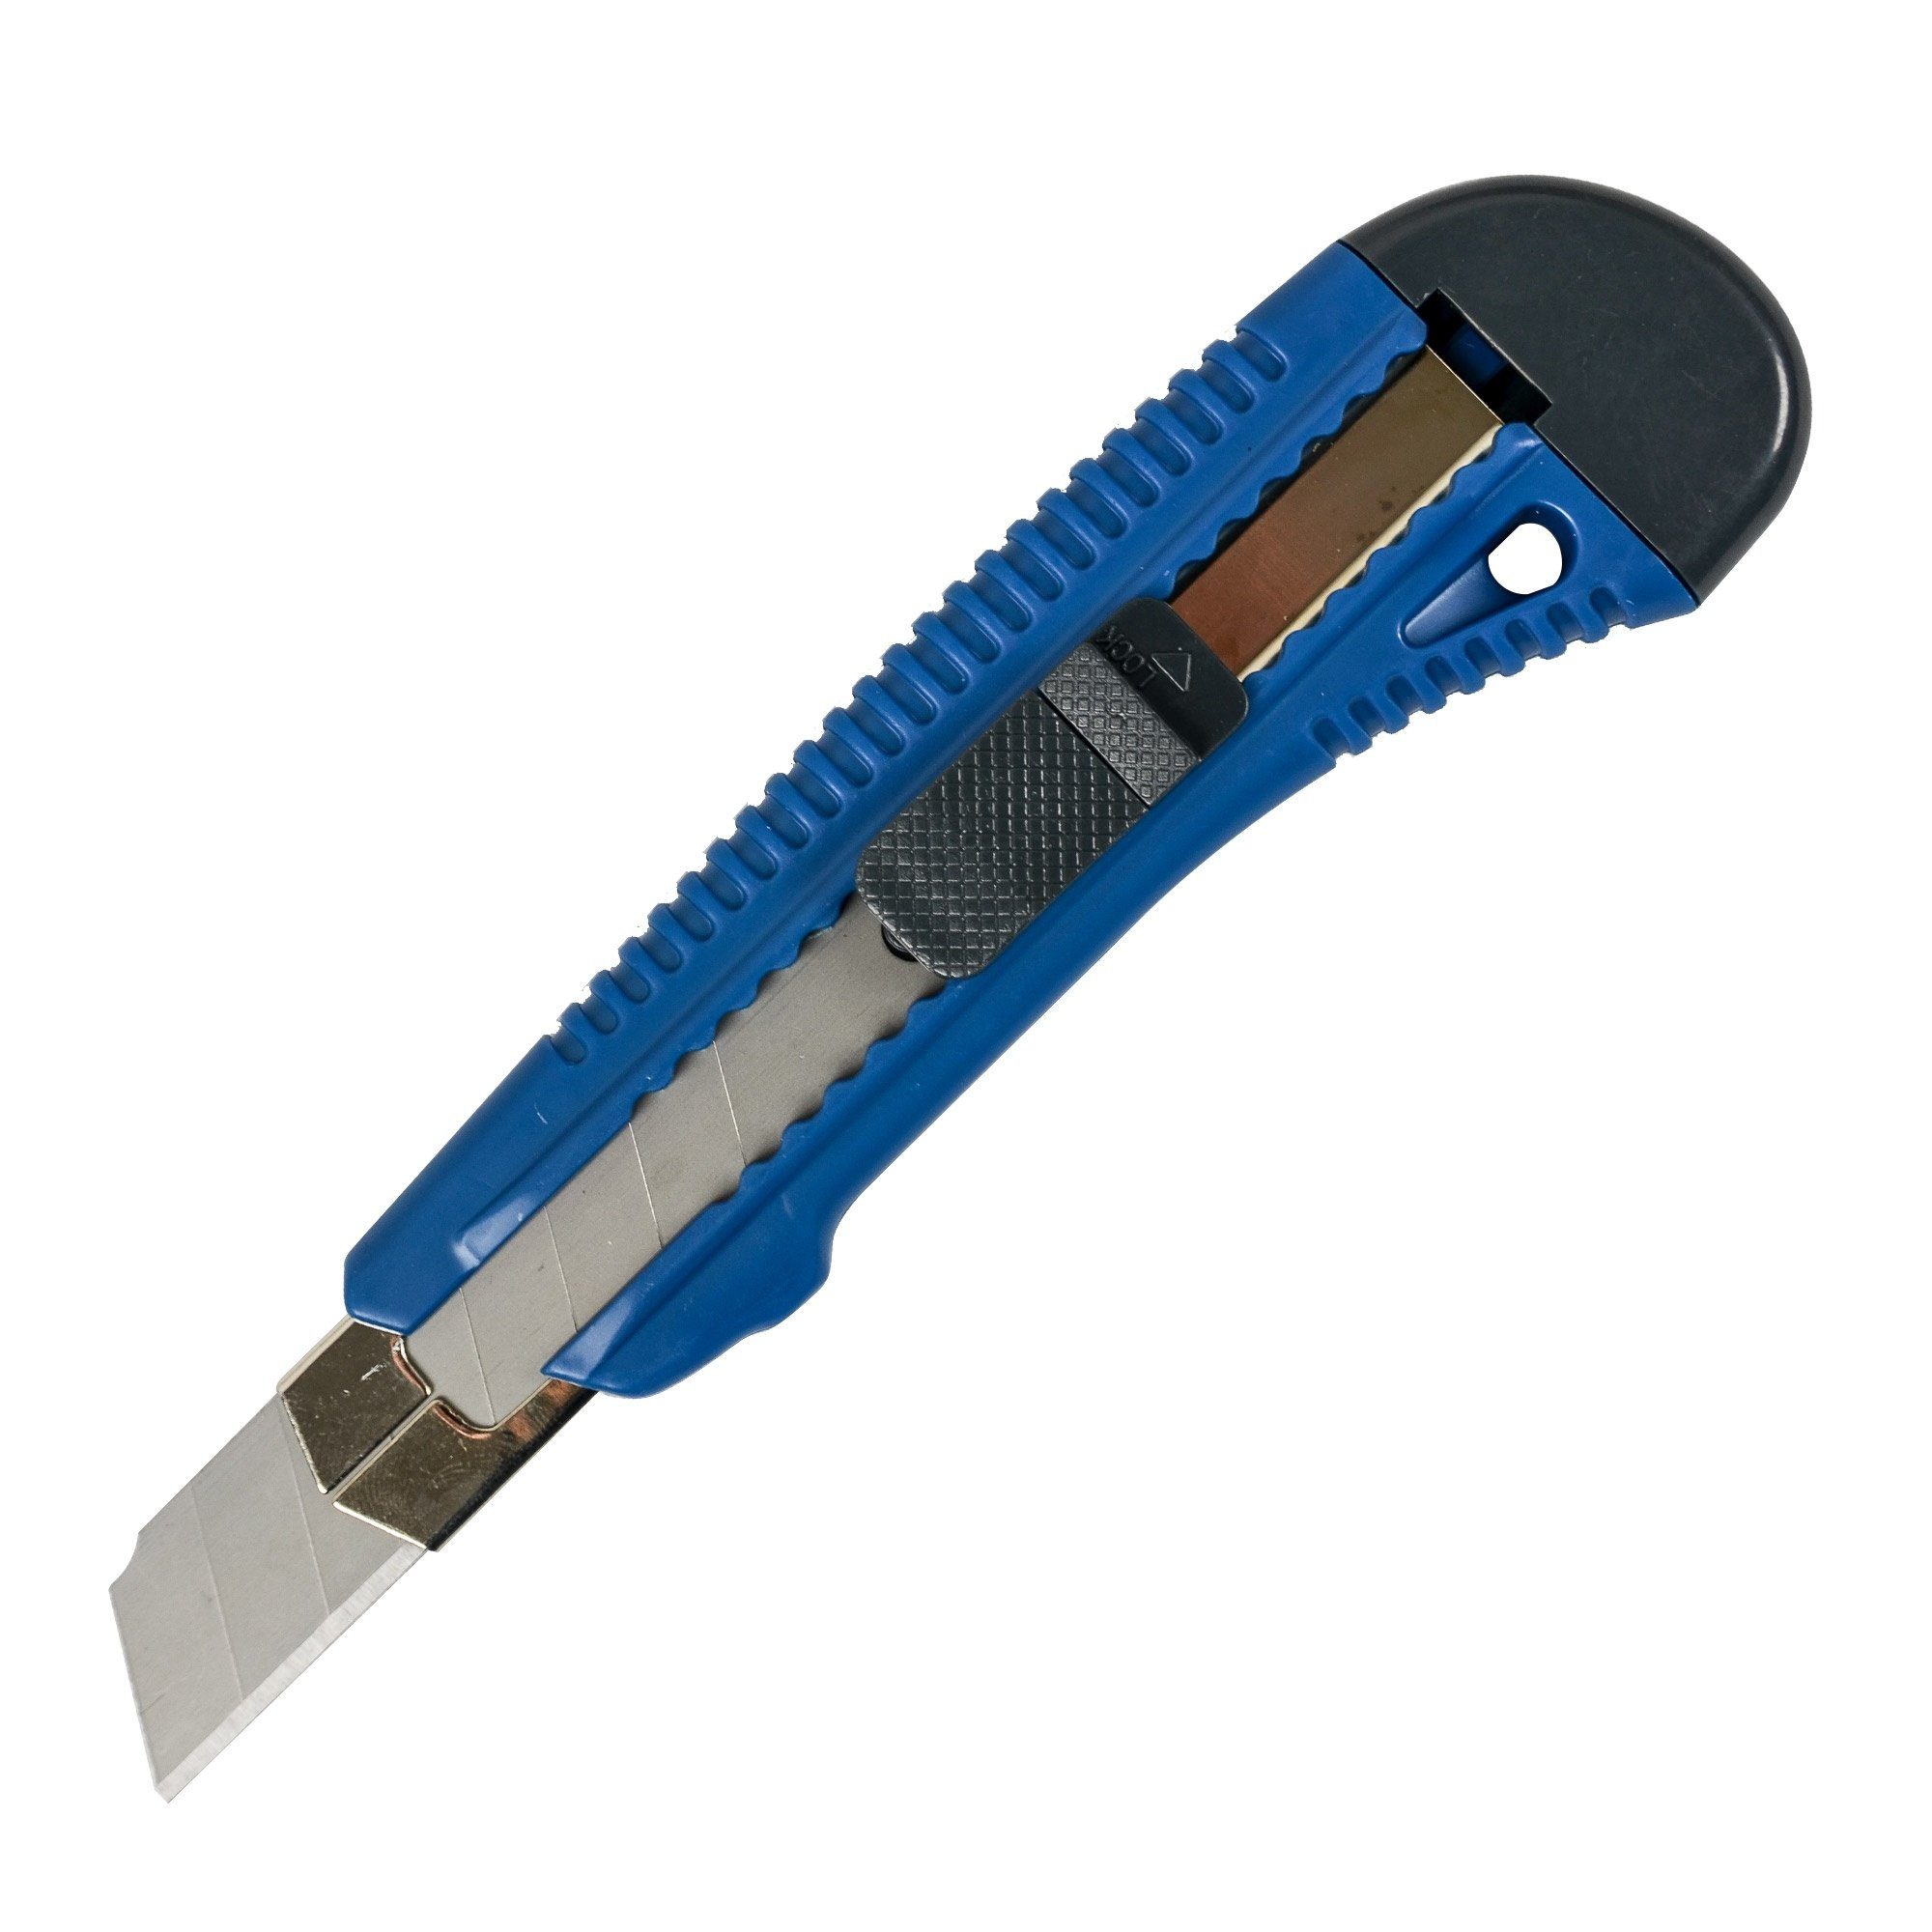 Scorprotect® Cuttermesser Abbrechmesser, Cuttermesser Standard 18 mm aus Kunststoff